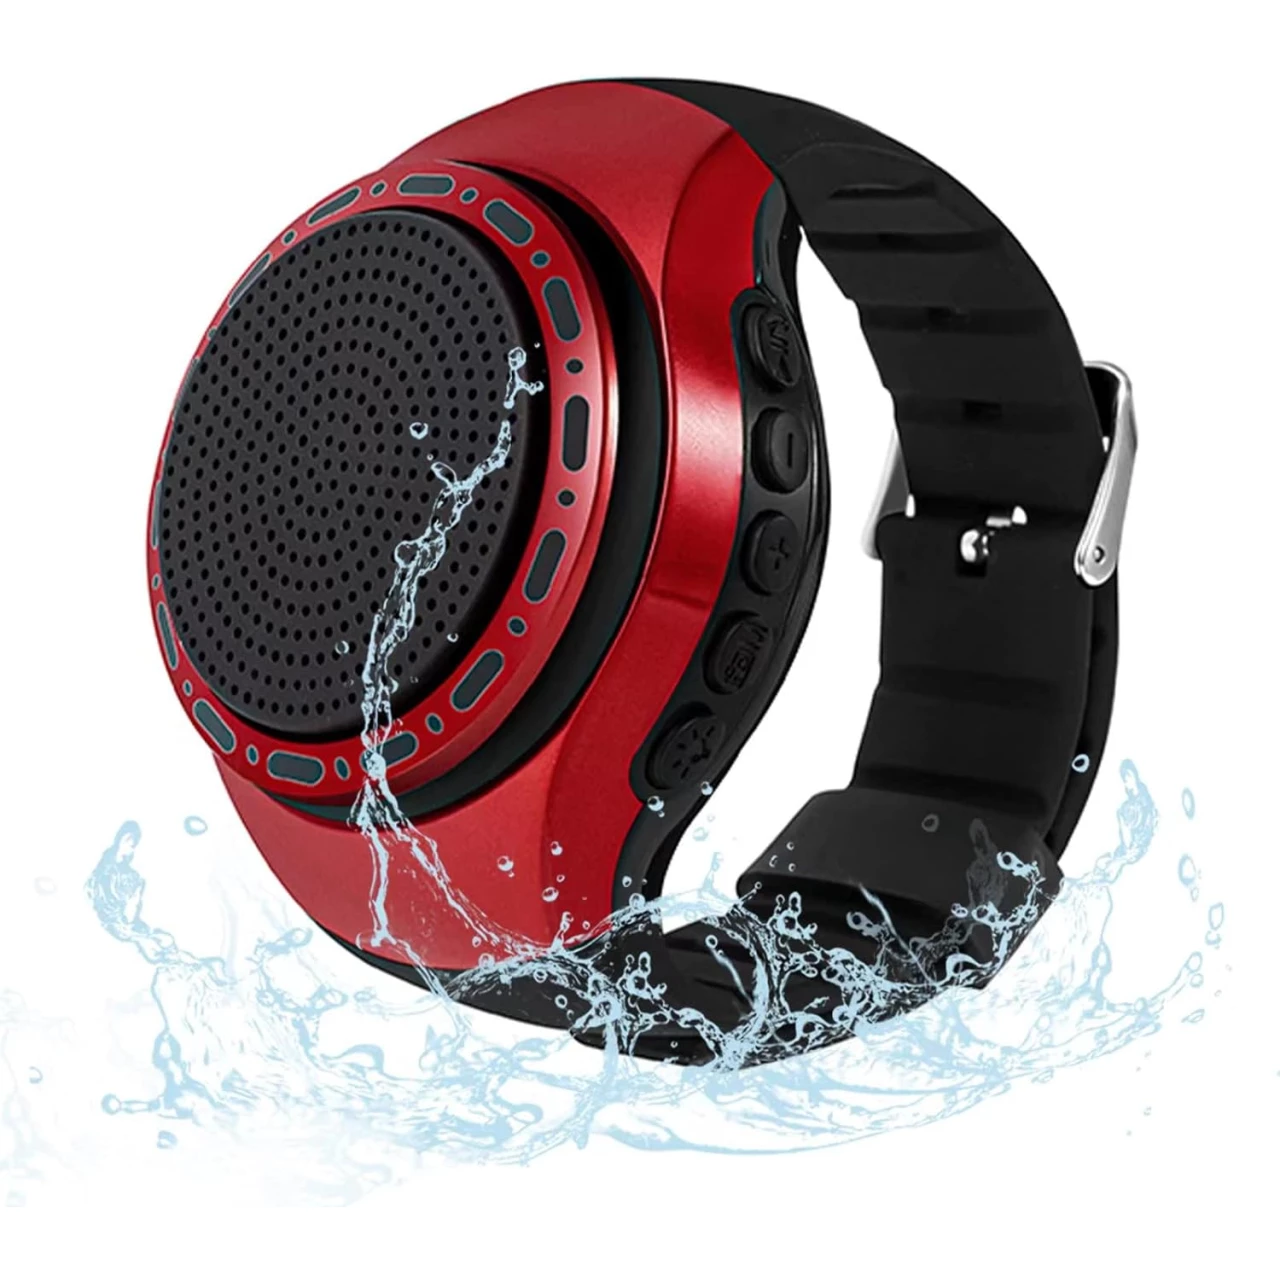 OriDecor Wireless Wearable Waterproof Wrist Portable Bluetooth Speaker Watch